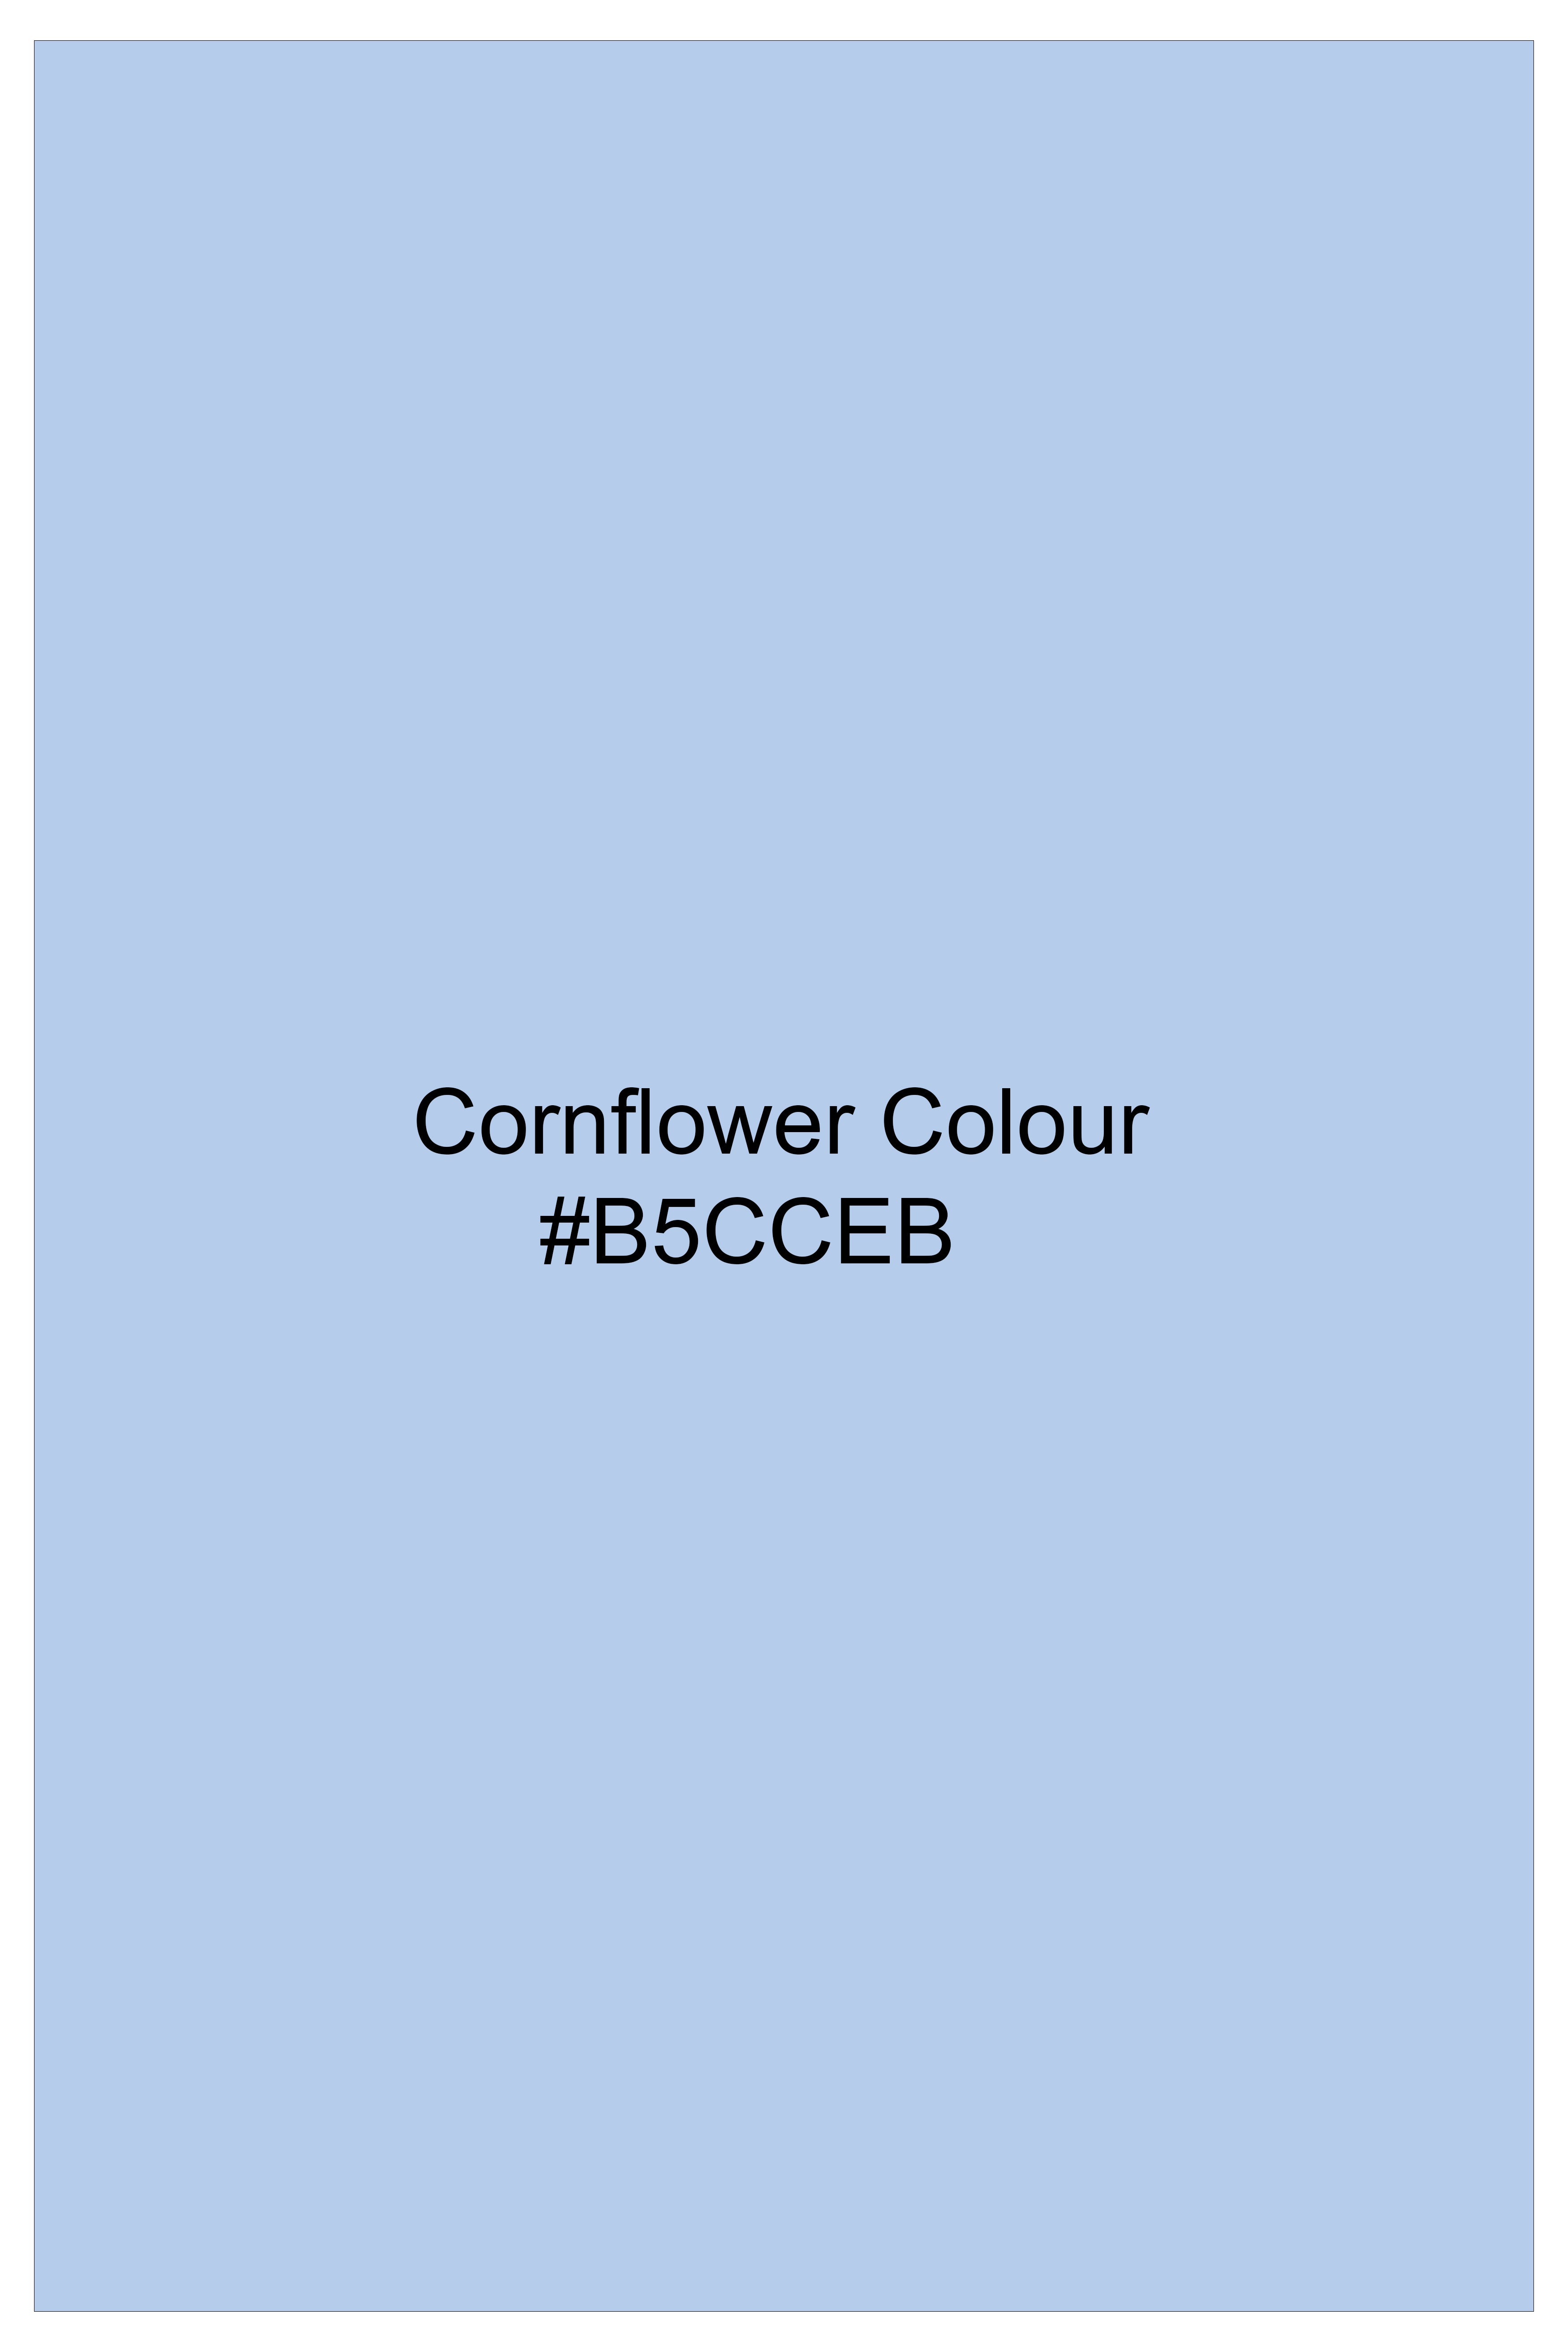 Cornflower Blue Solid Subtle Sheen Super Soft Premium Cotton Boxer